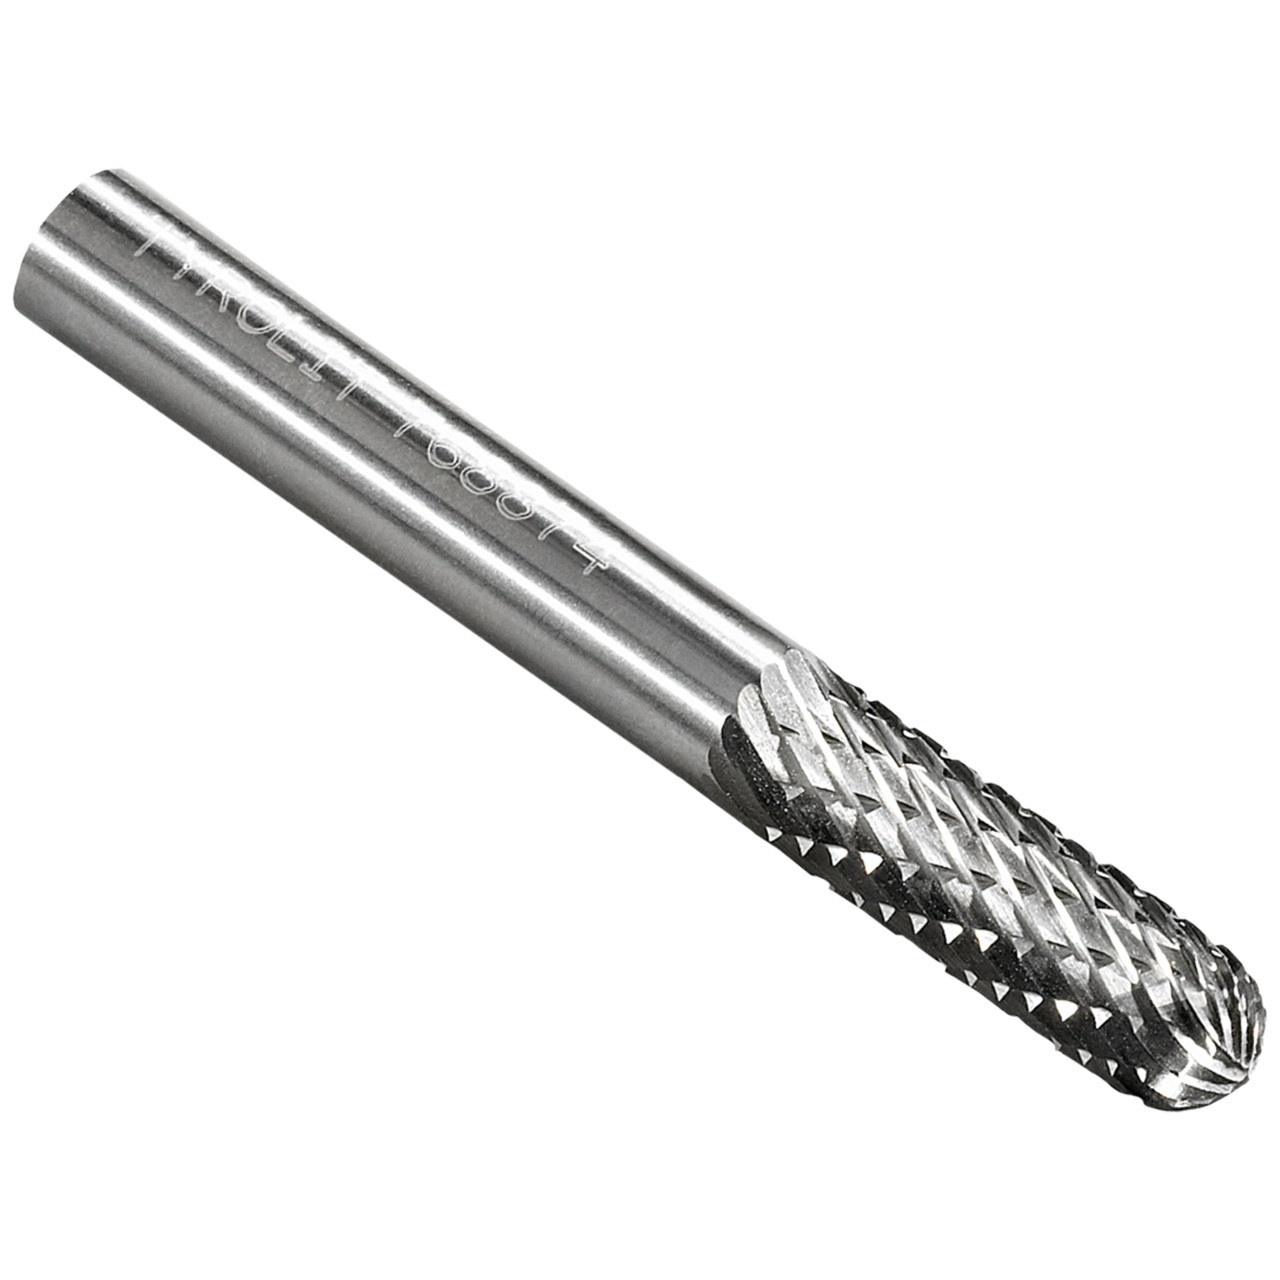 Tyrolit Fresa de metal duro DxT-SxL 12x25-6x70 Para fundición, acero y acero inoxidable, forma: 52WRC - cilíndrica, Art. 766133